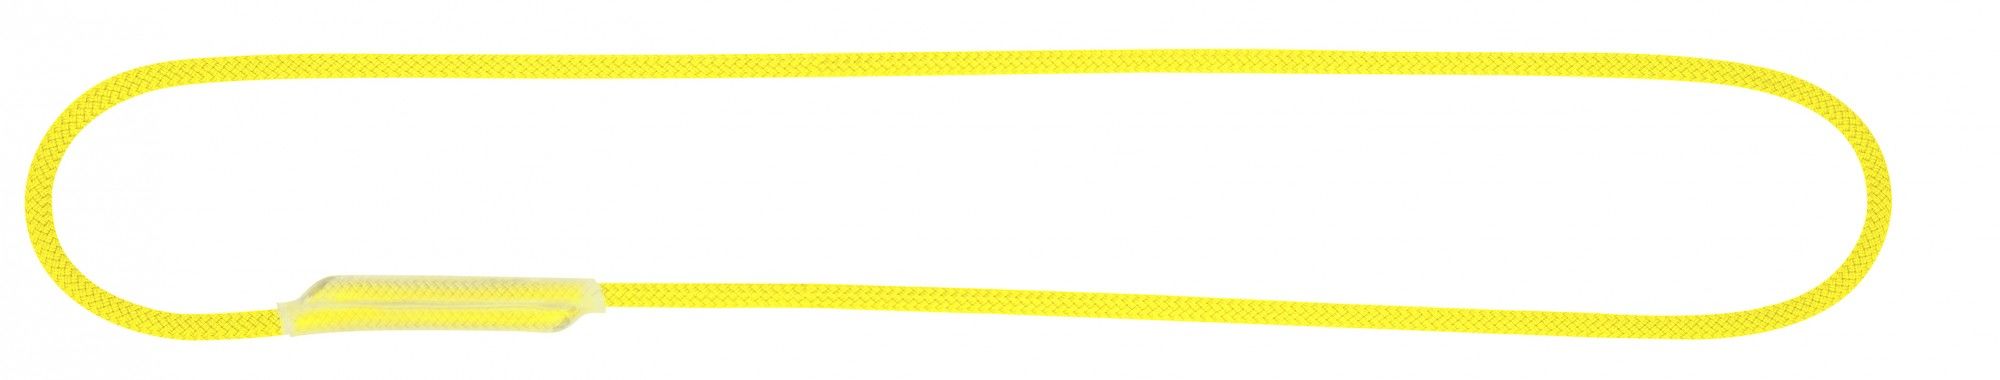 Beal Dynamische hochfeste Aramid Seilschlinge Yellow